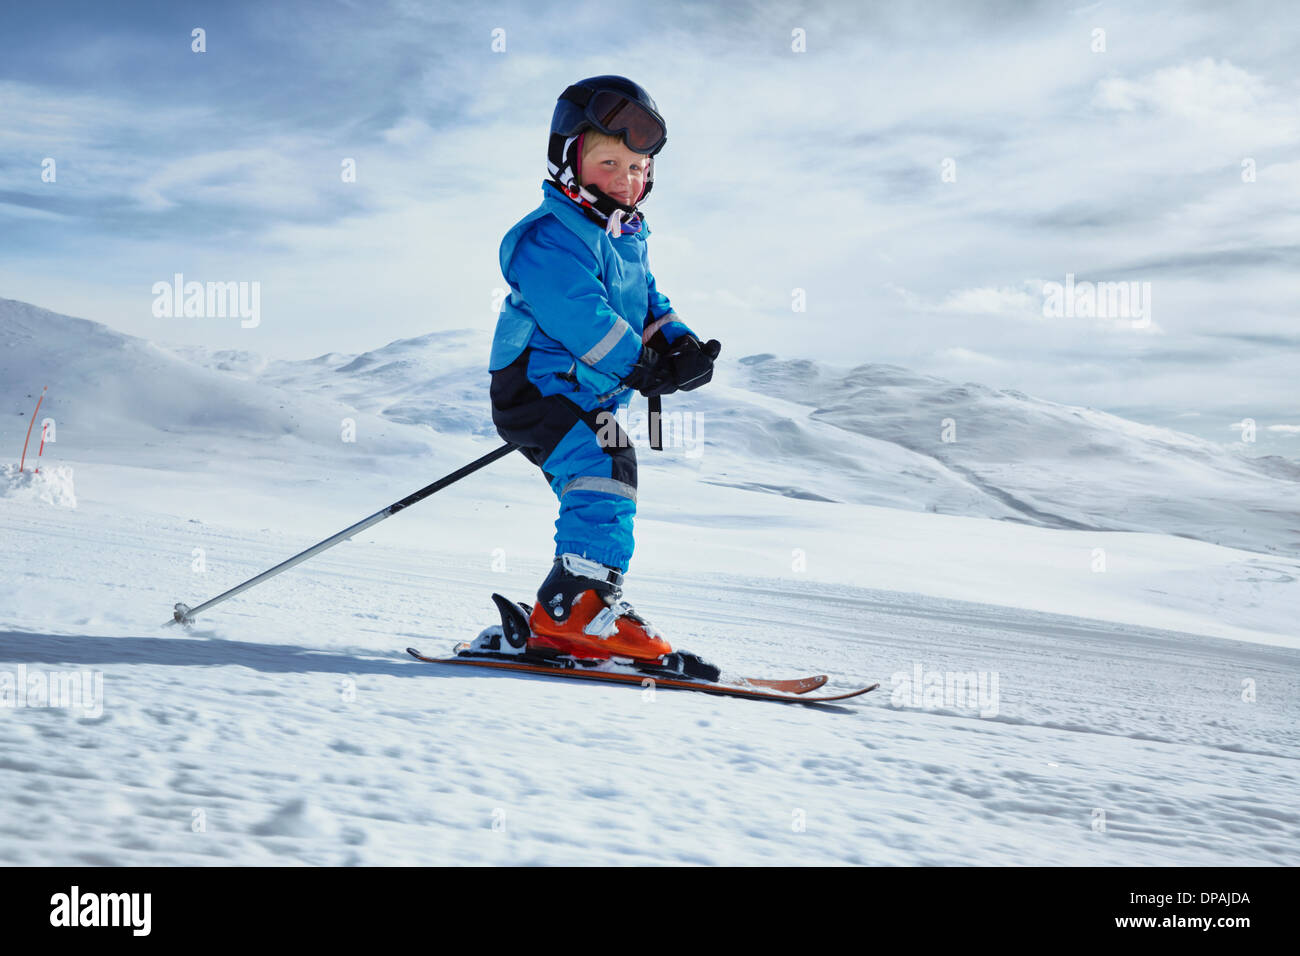 Young boy skiing, Hermavan, Sweden Stock Photo